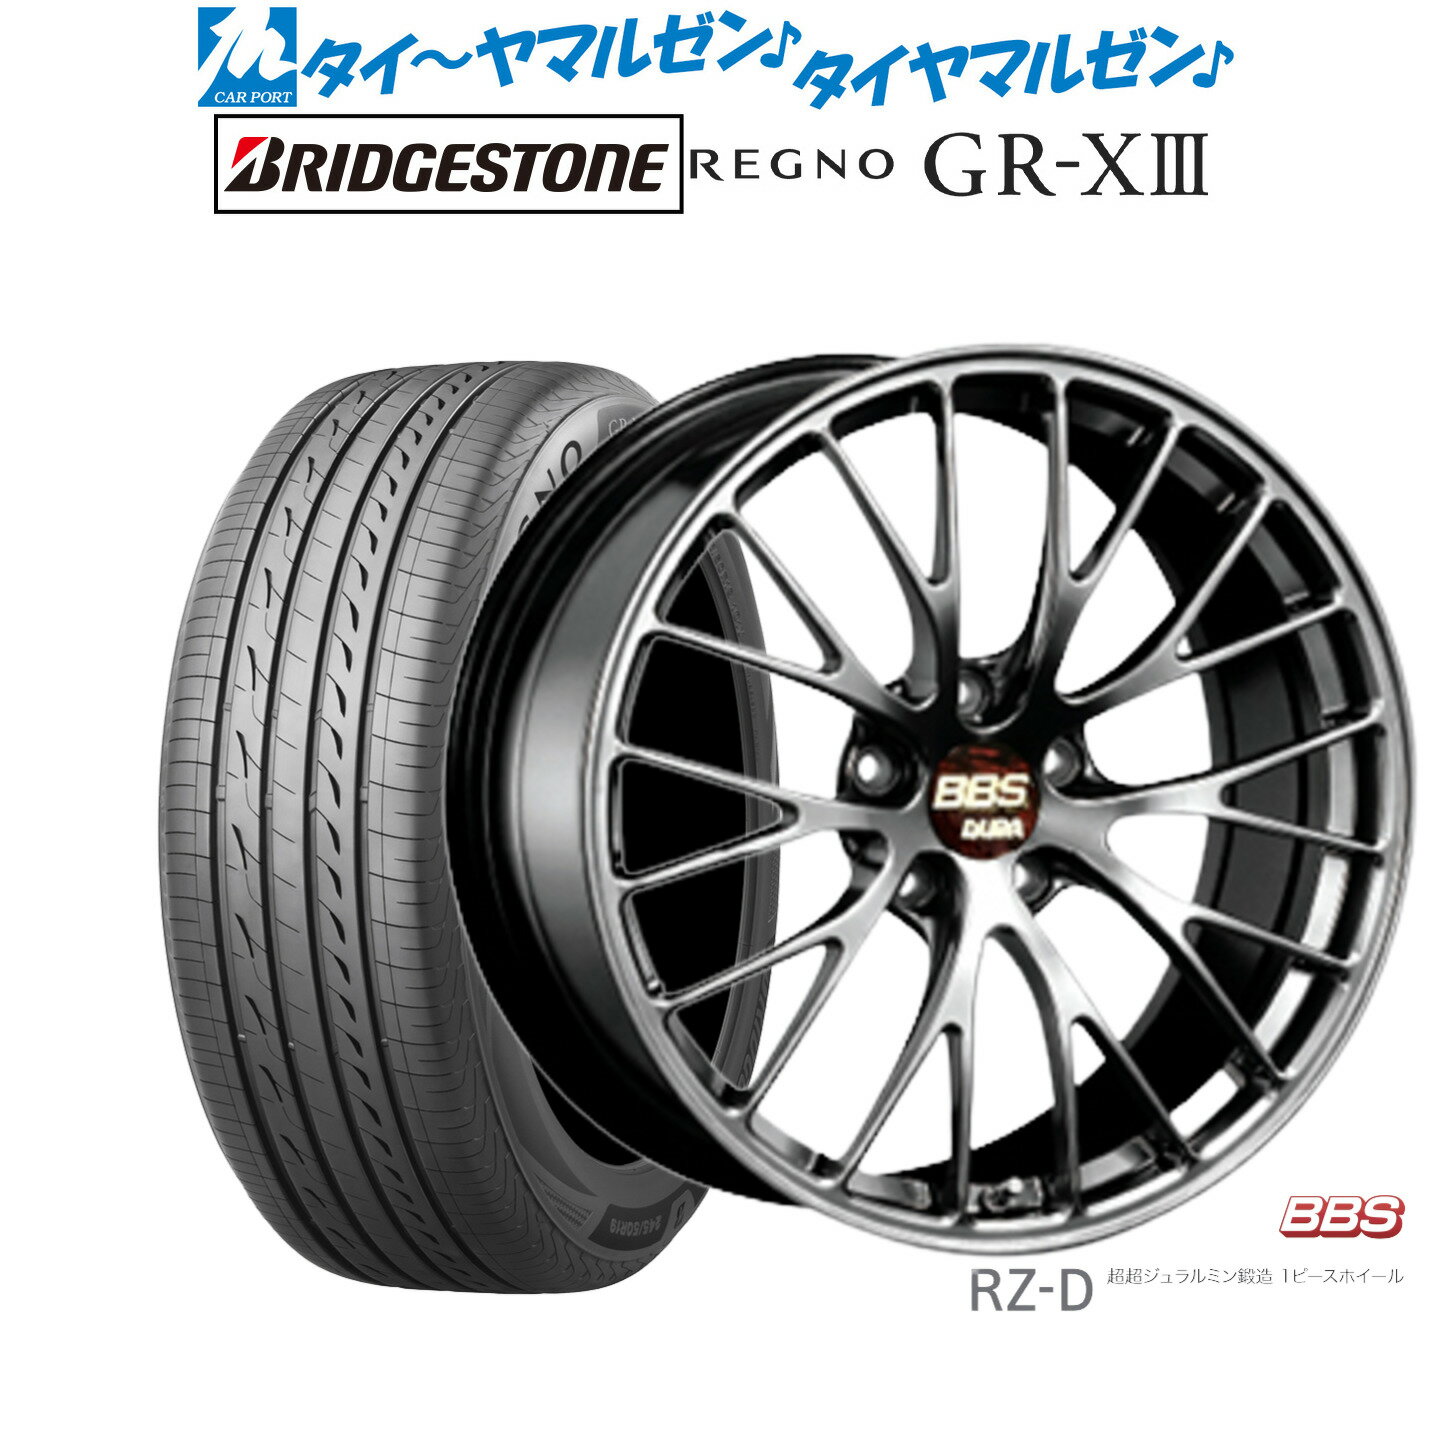 [5/20]割引クーポン配布新品 サマータイヤ ホイール4本セットBBS JAPAN RZ-D19インチ 8.5Jブリヂストン REGNO レグノ GR-XIII(GR-X3)225/40R19